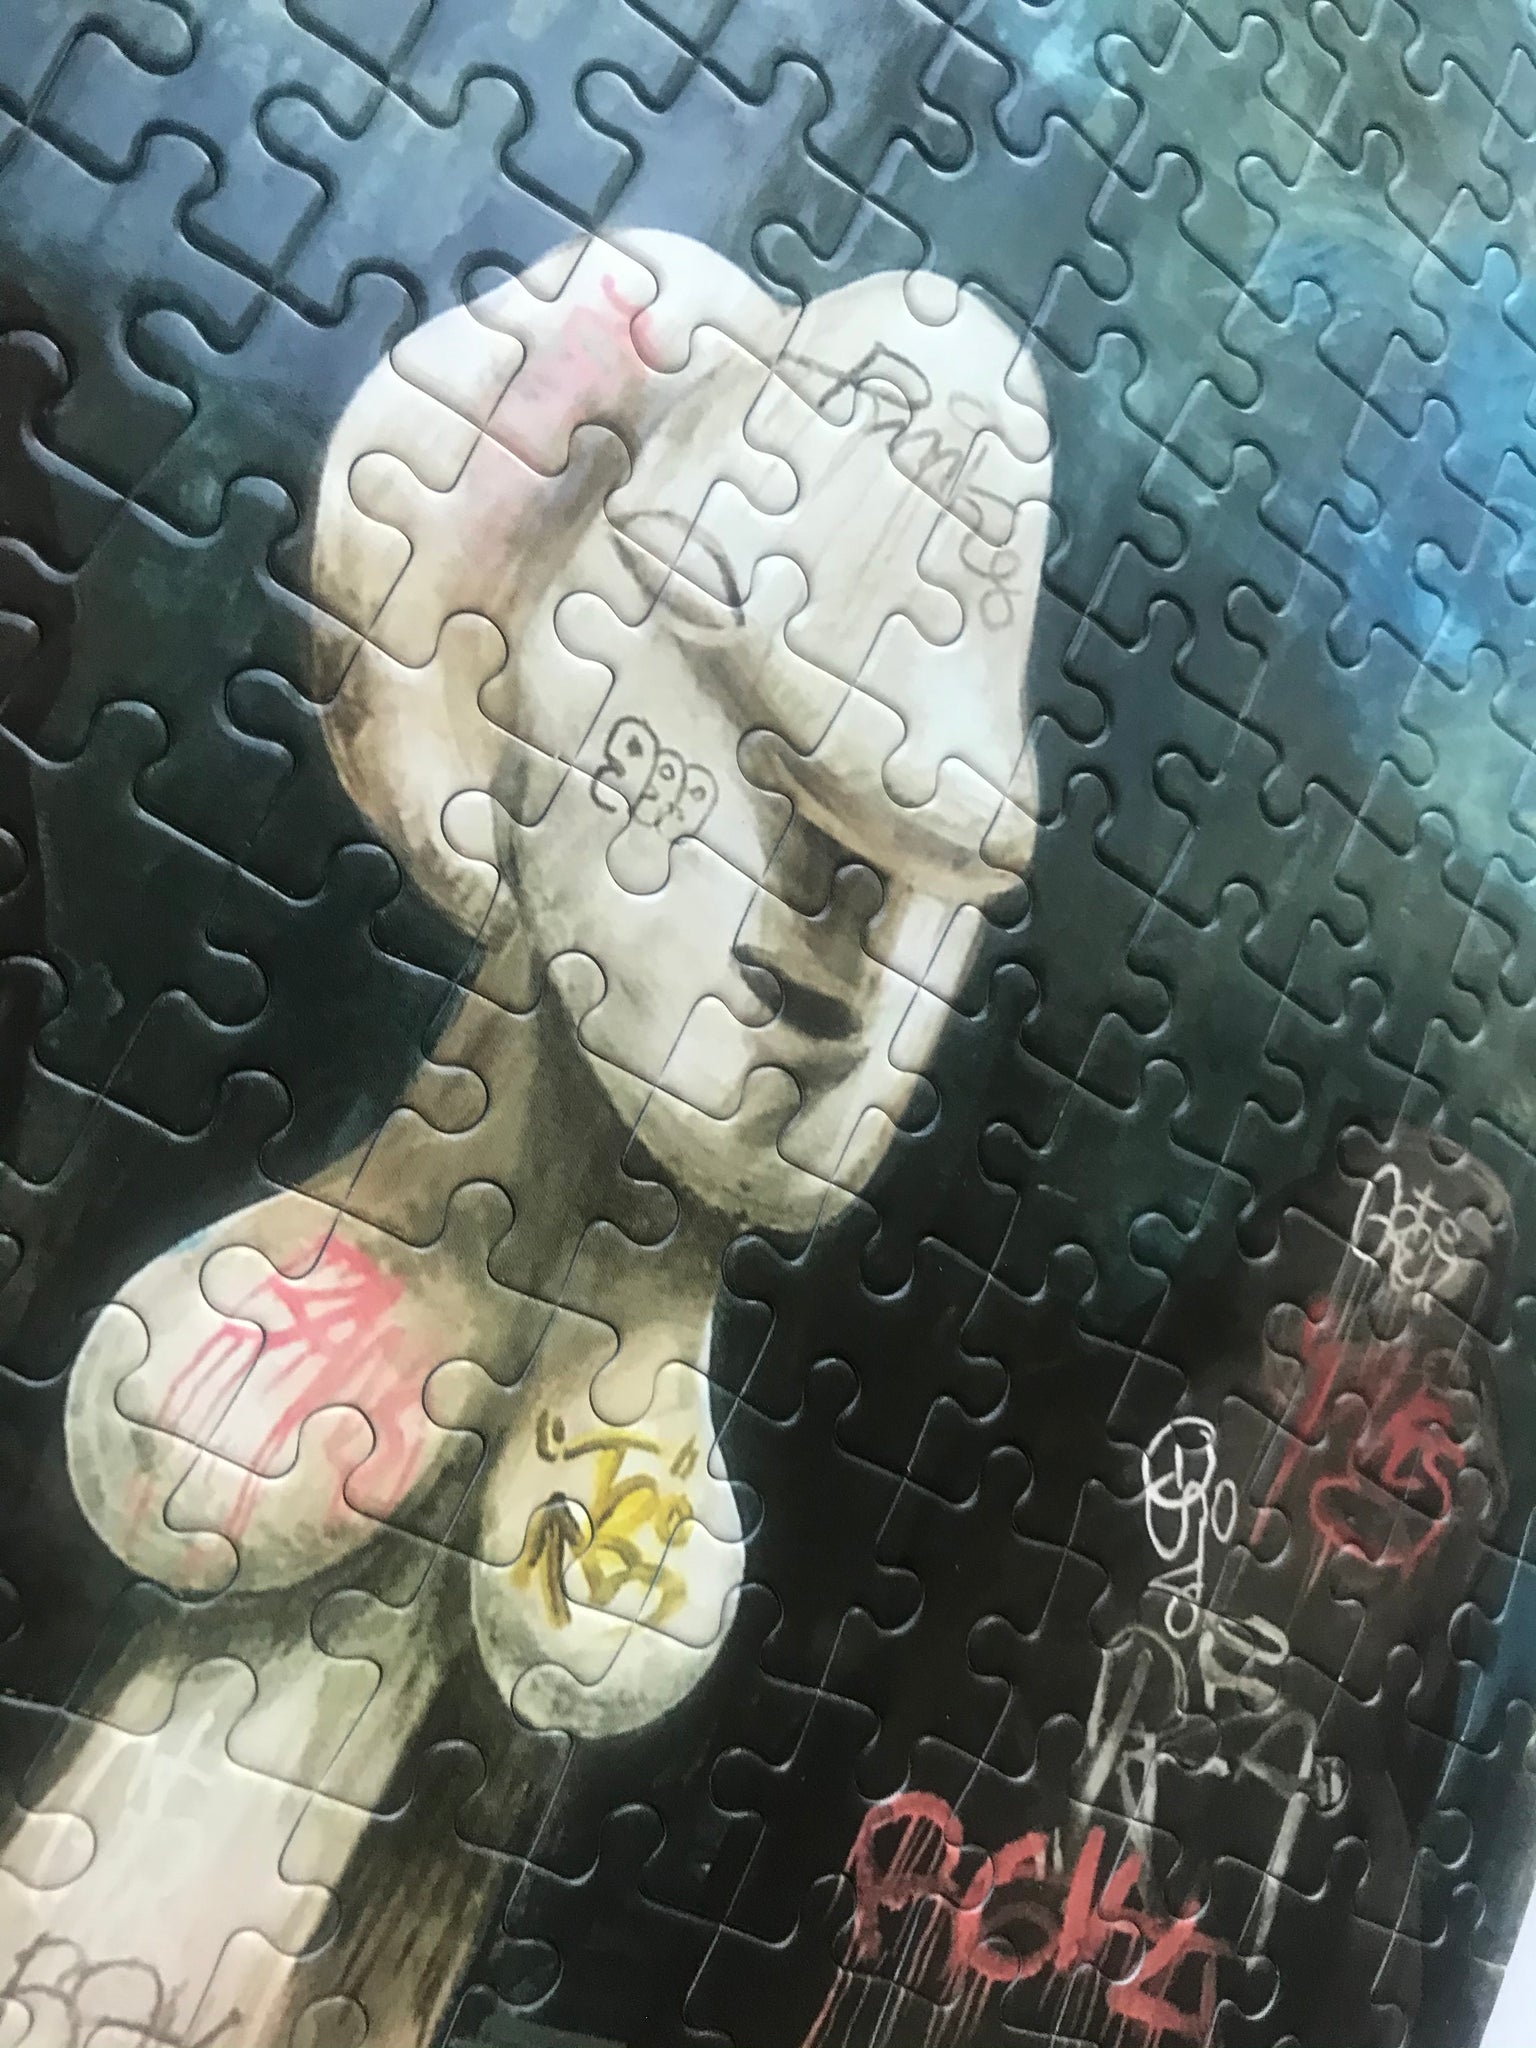 Artist Noah Becker Collector Edition Jigsaw Puzzle